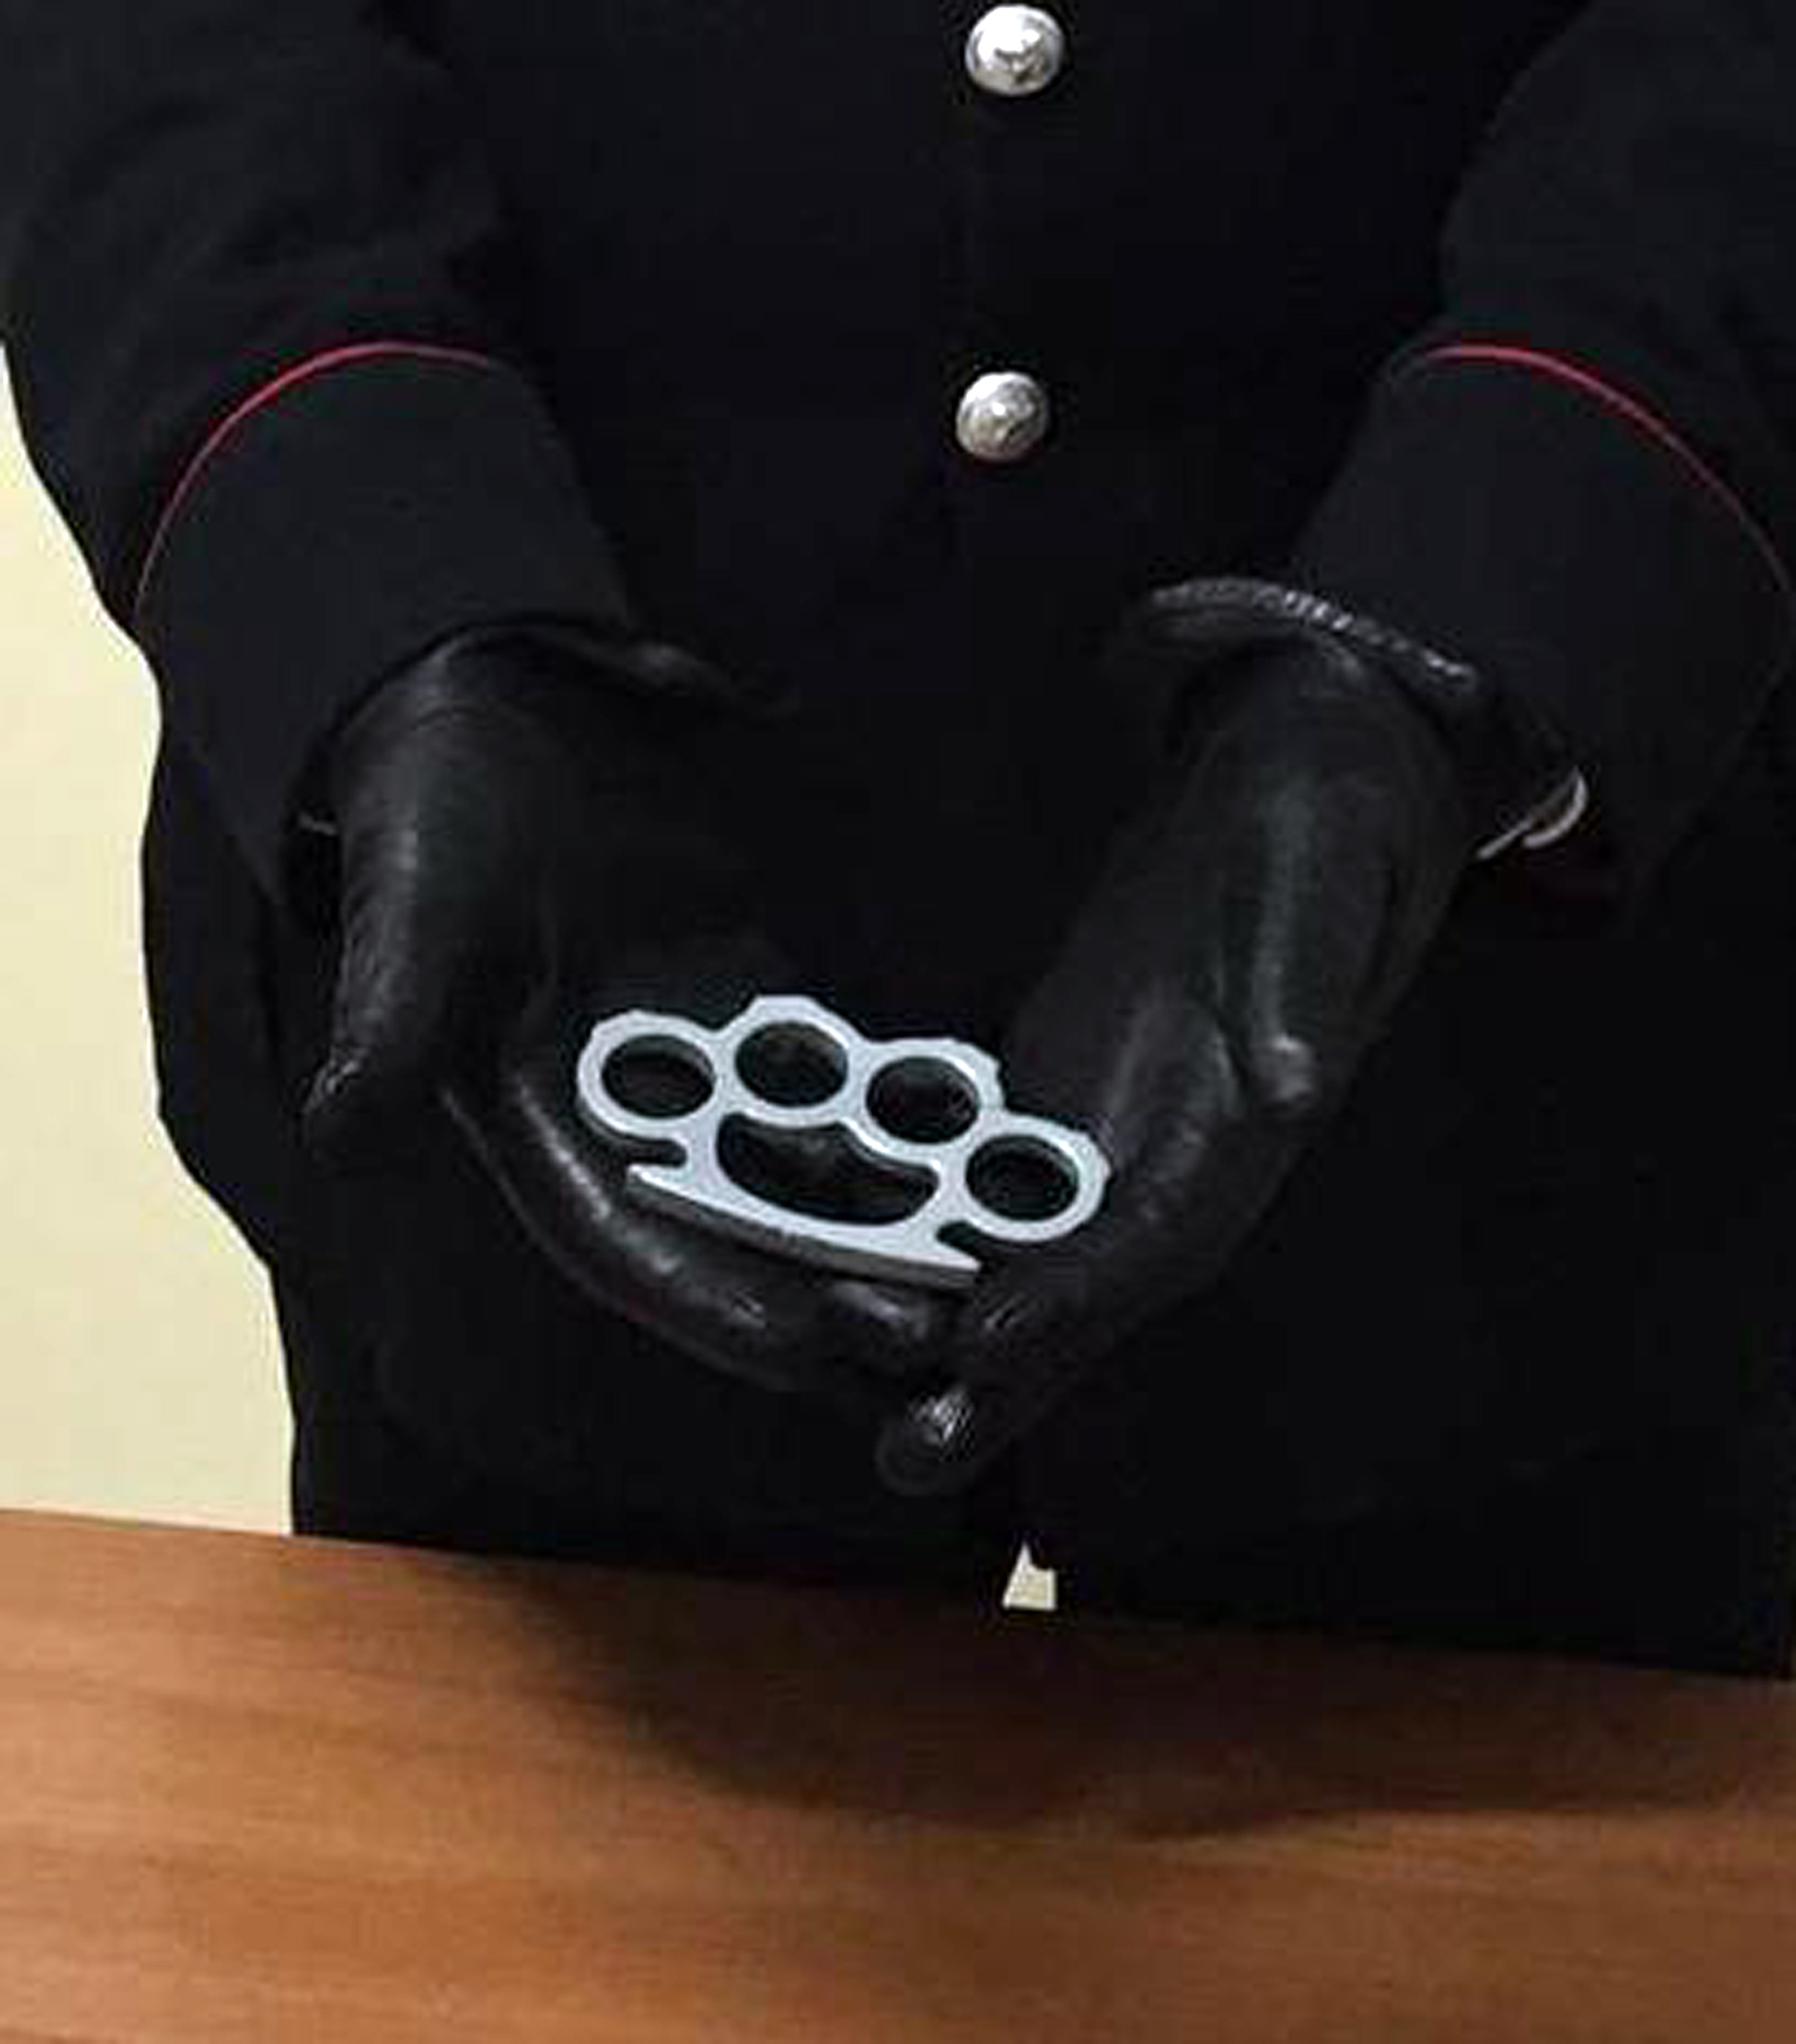 Quarto, carabinieri trovano tirapugni addosso ad uno studente minorenne